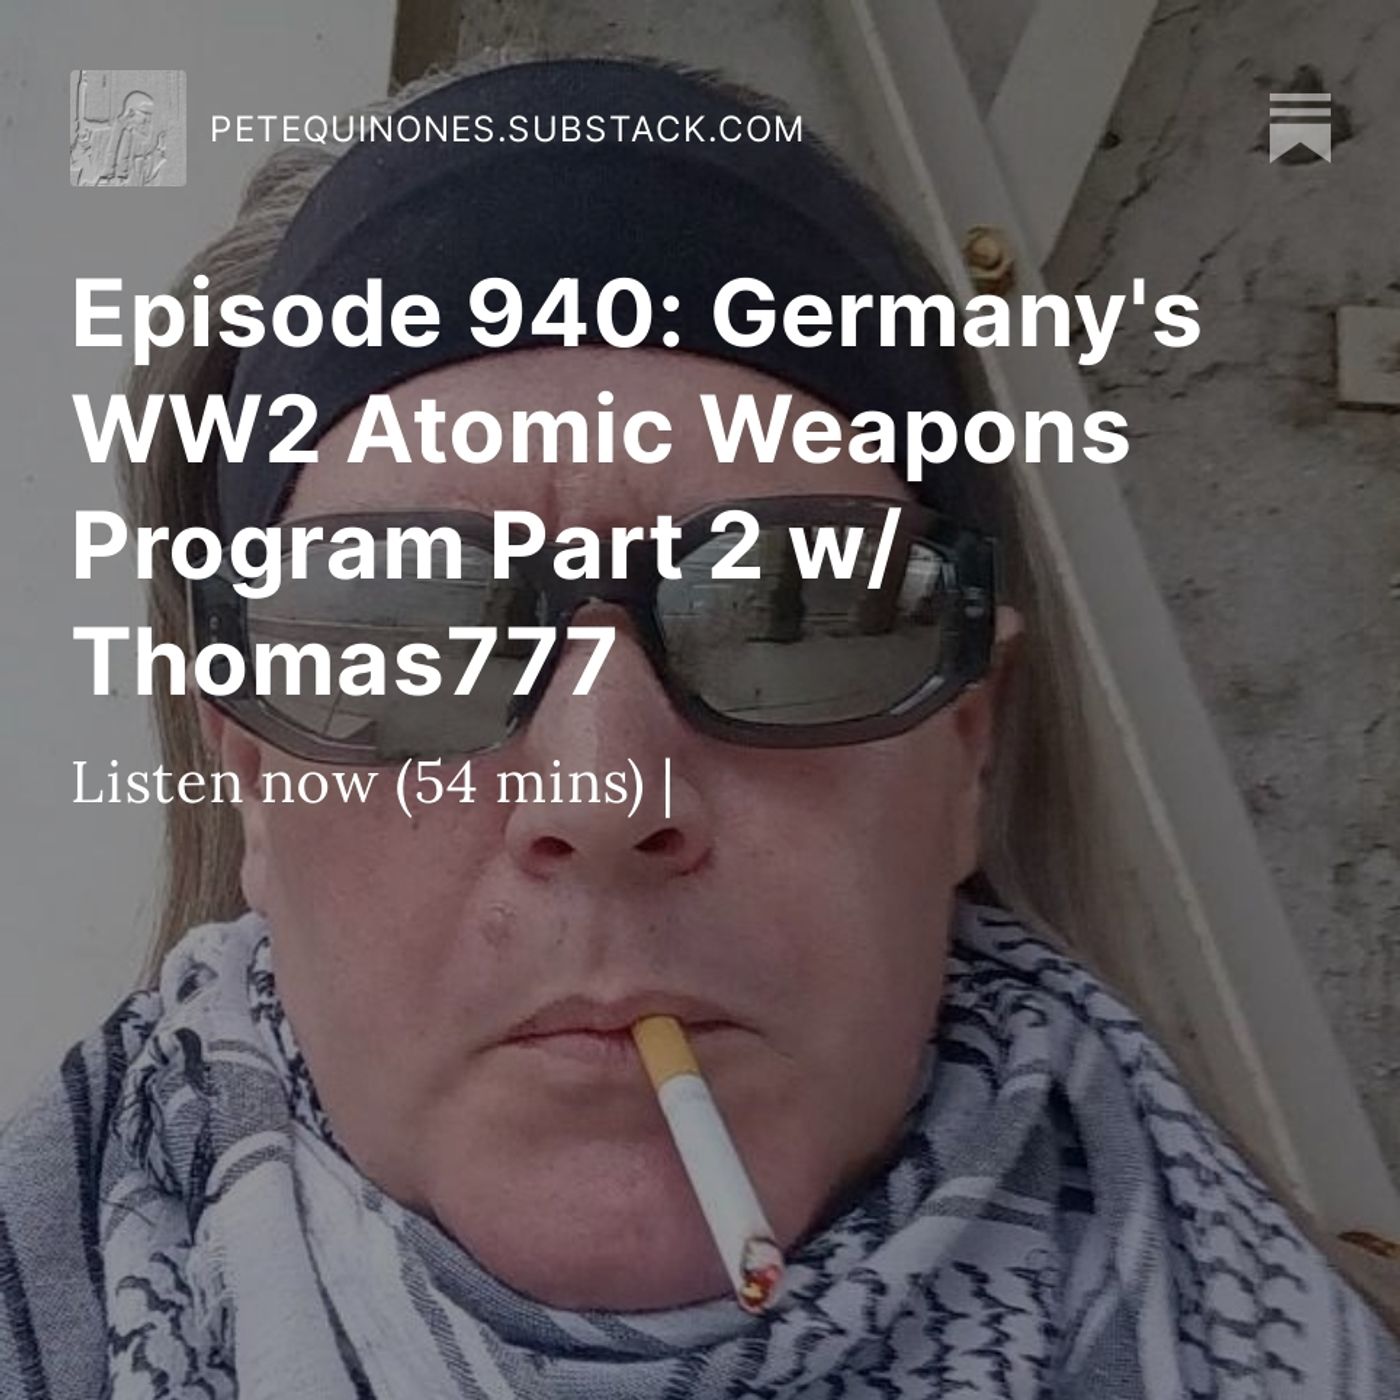 Episode 940: Germany's WW2 Atomic Weapons Program Part 2 w/ Thomas777